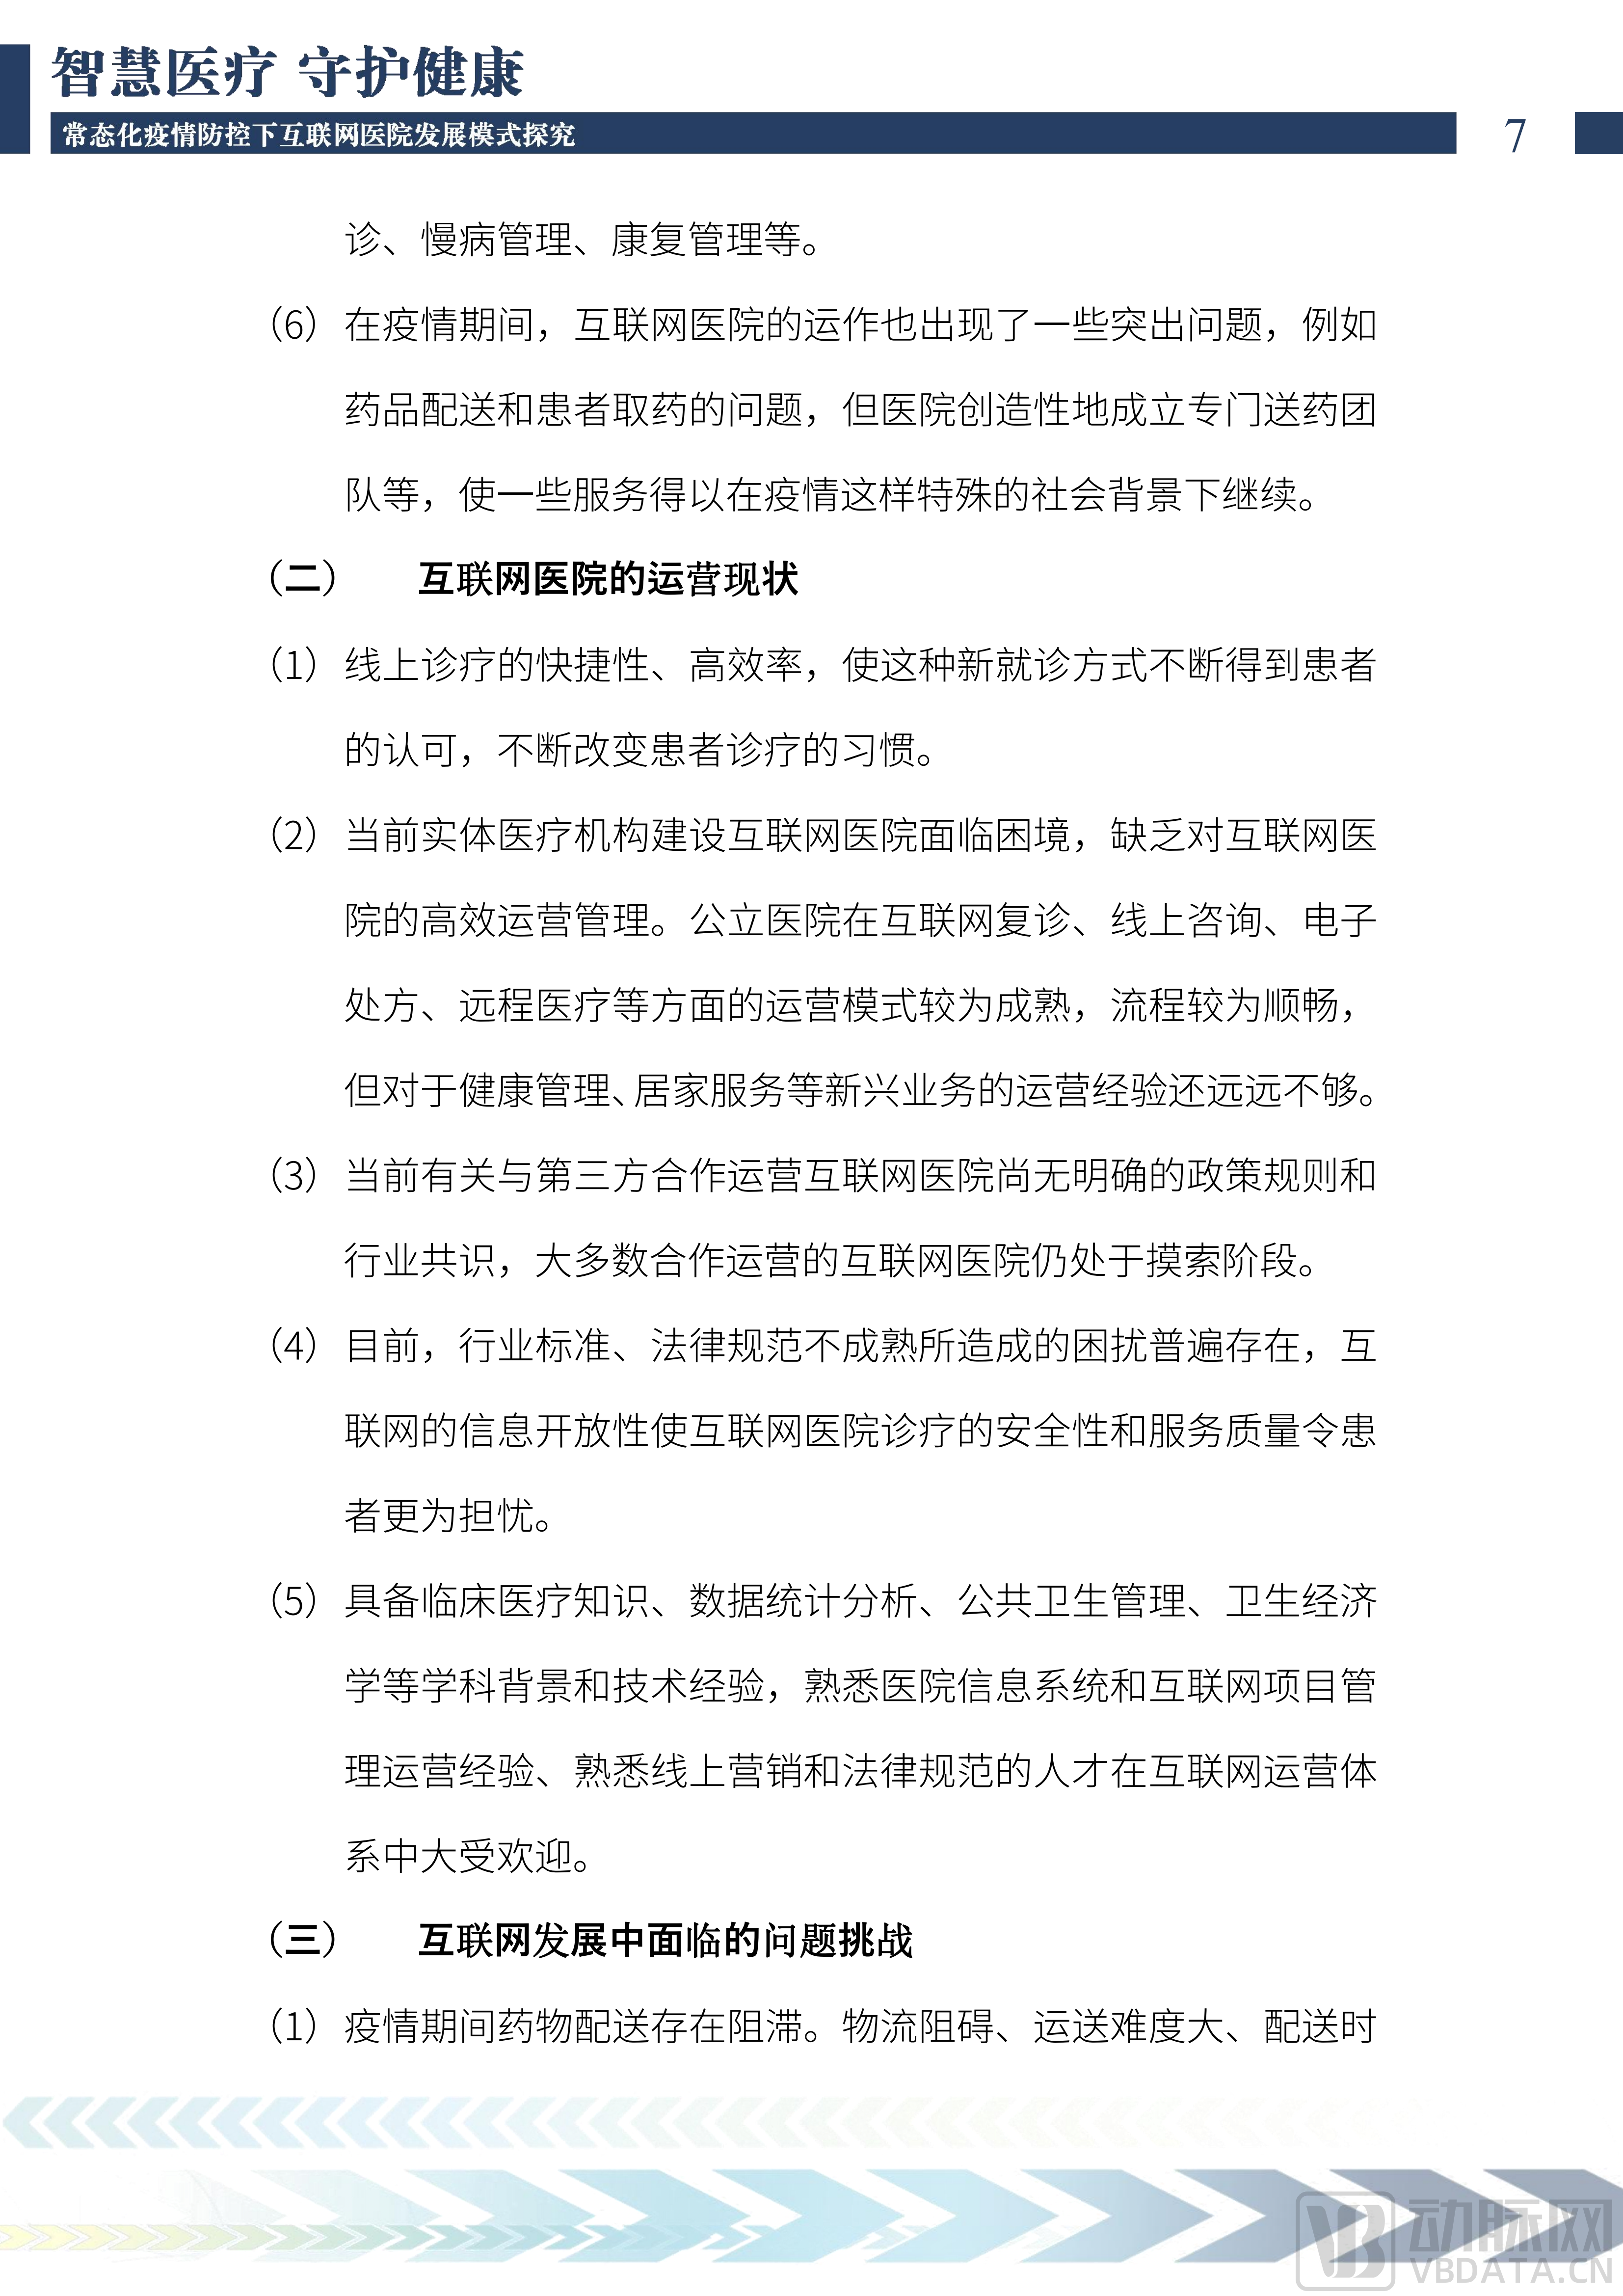 2022中国互联网医院发展调研报告(1)_08.png